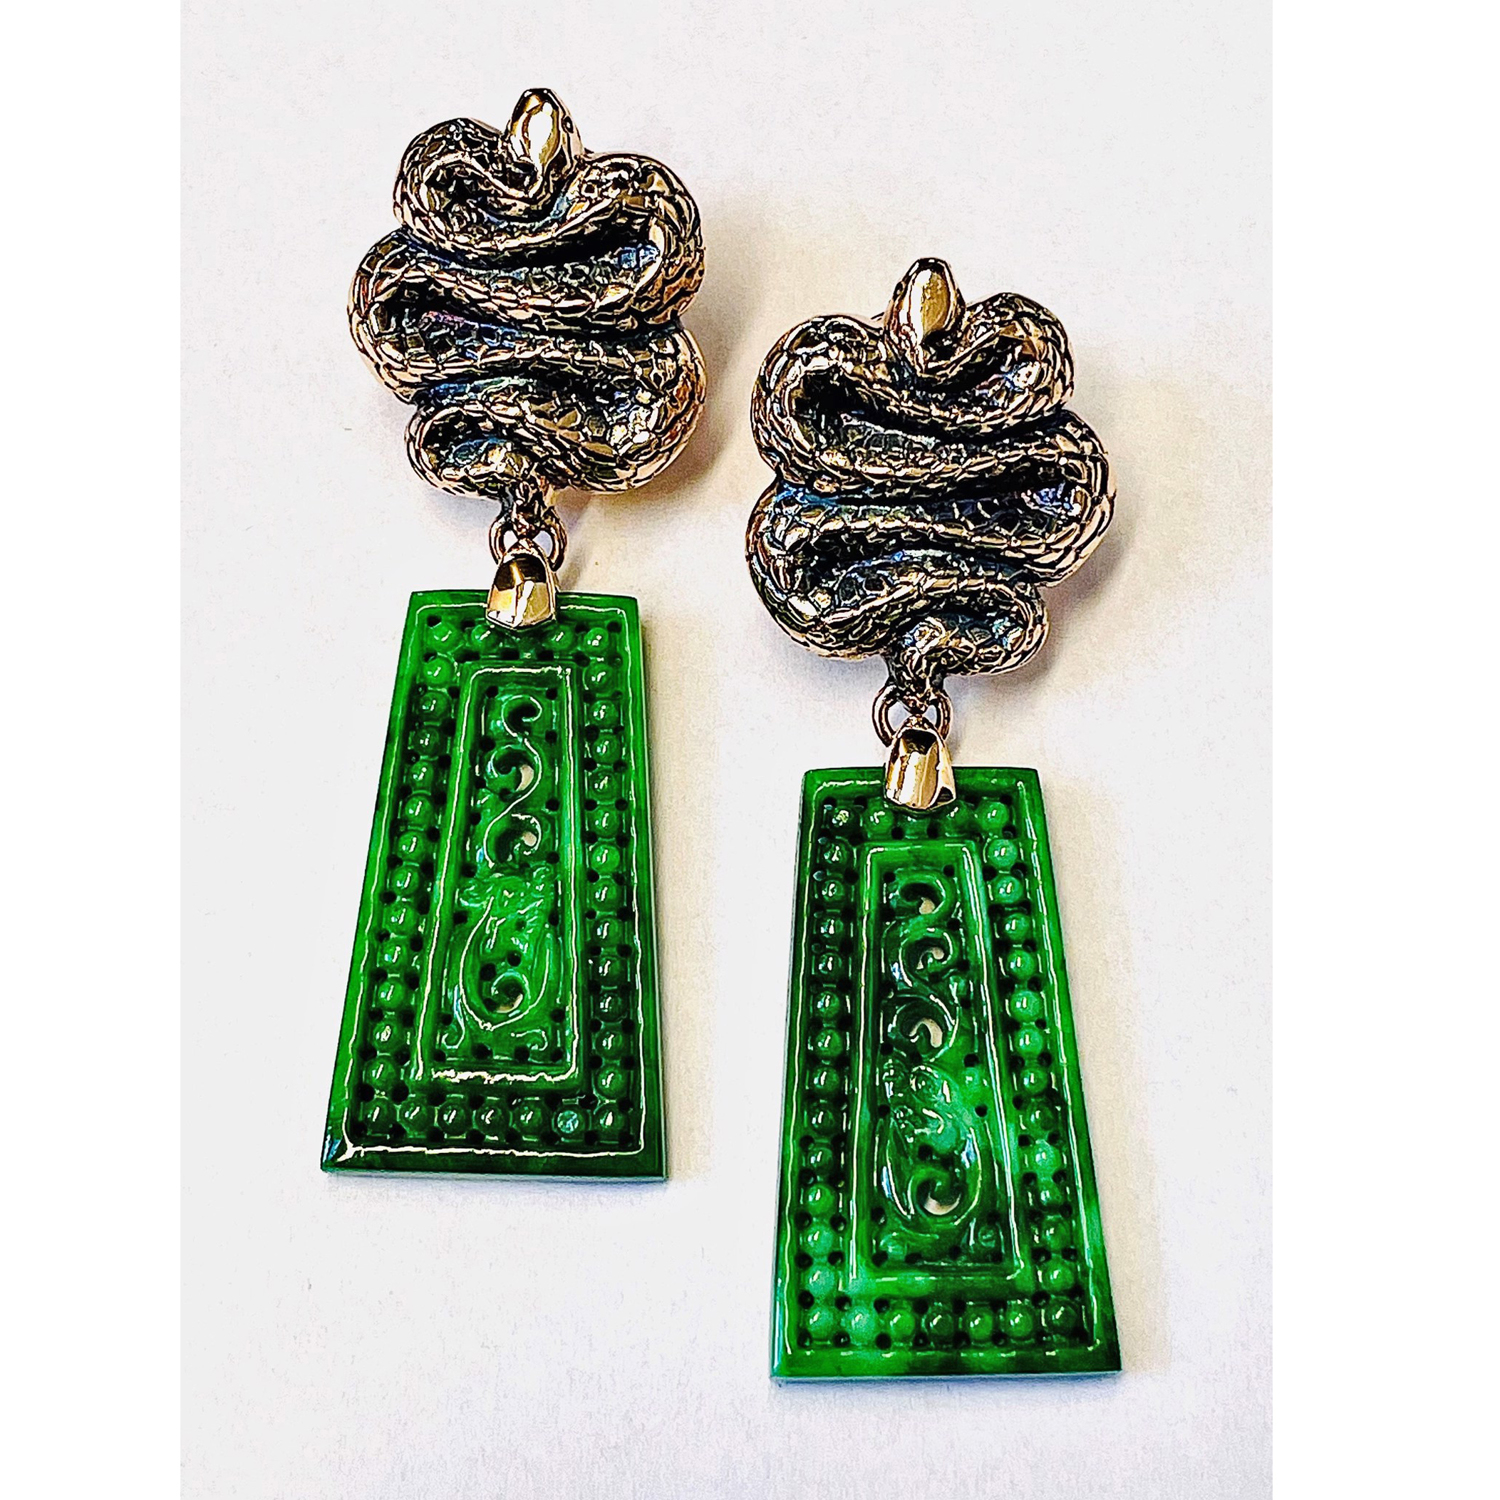 Ohrring "Auramis" in Roségold mit grüner Jade-Schnitzerei, Messerer Juwelier Zürich